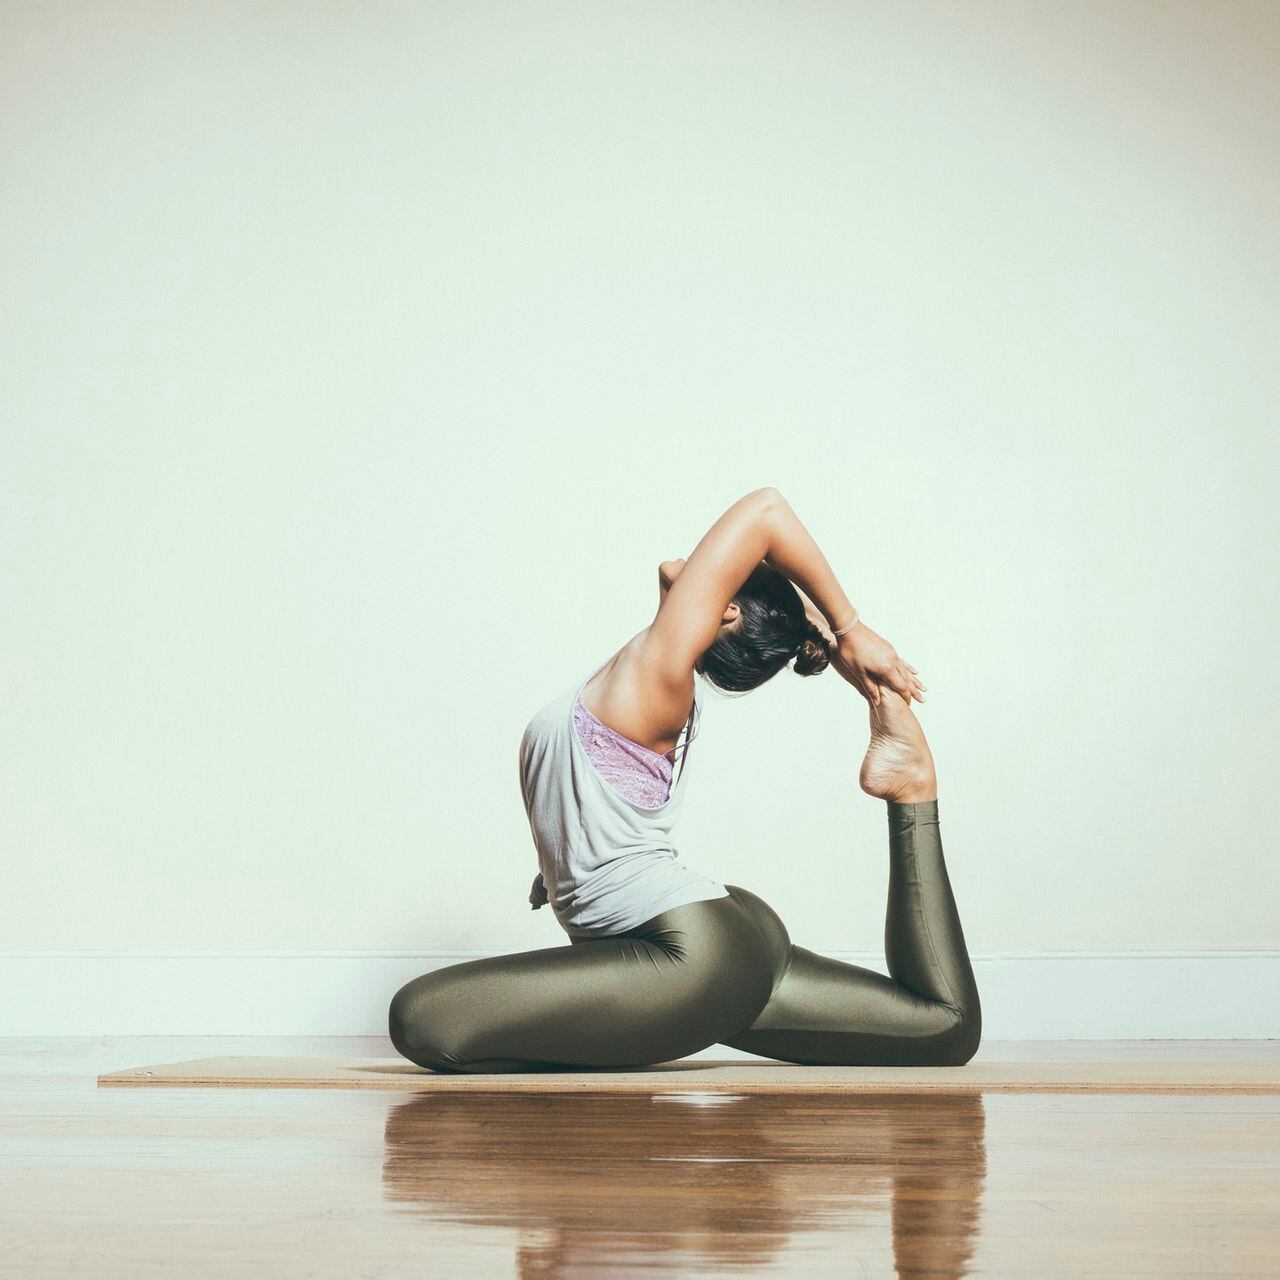 El yoga caliente puede ser bueno pero también presenta riesgos a